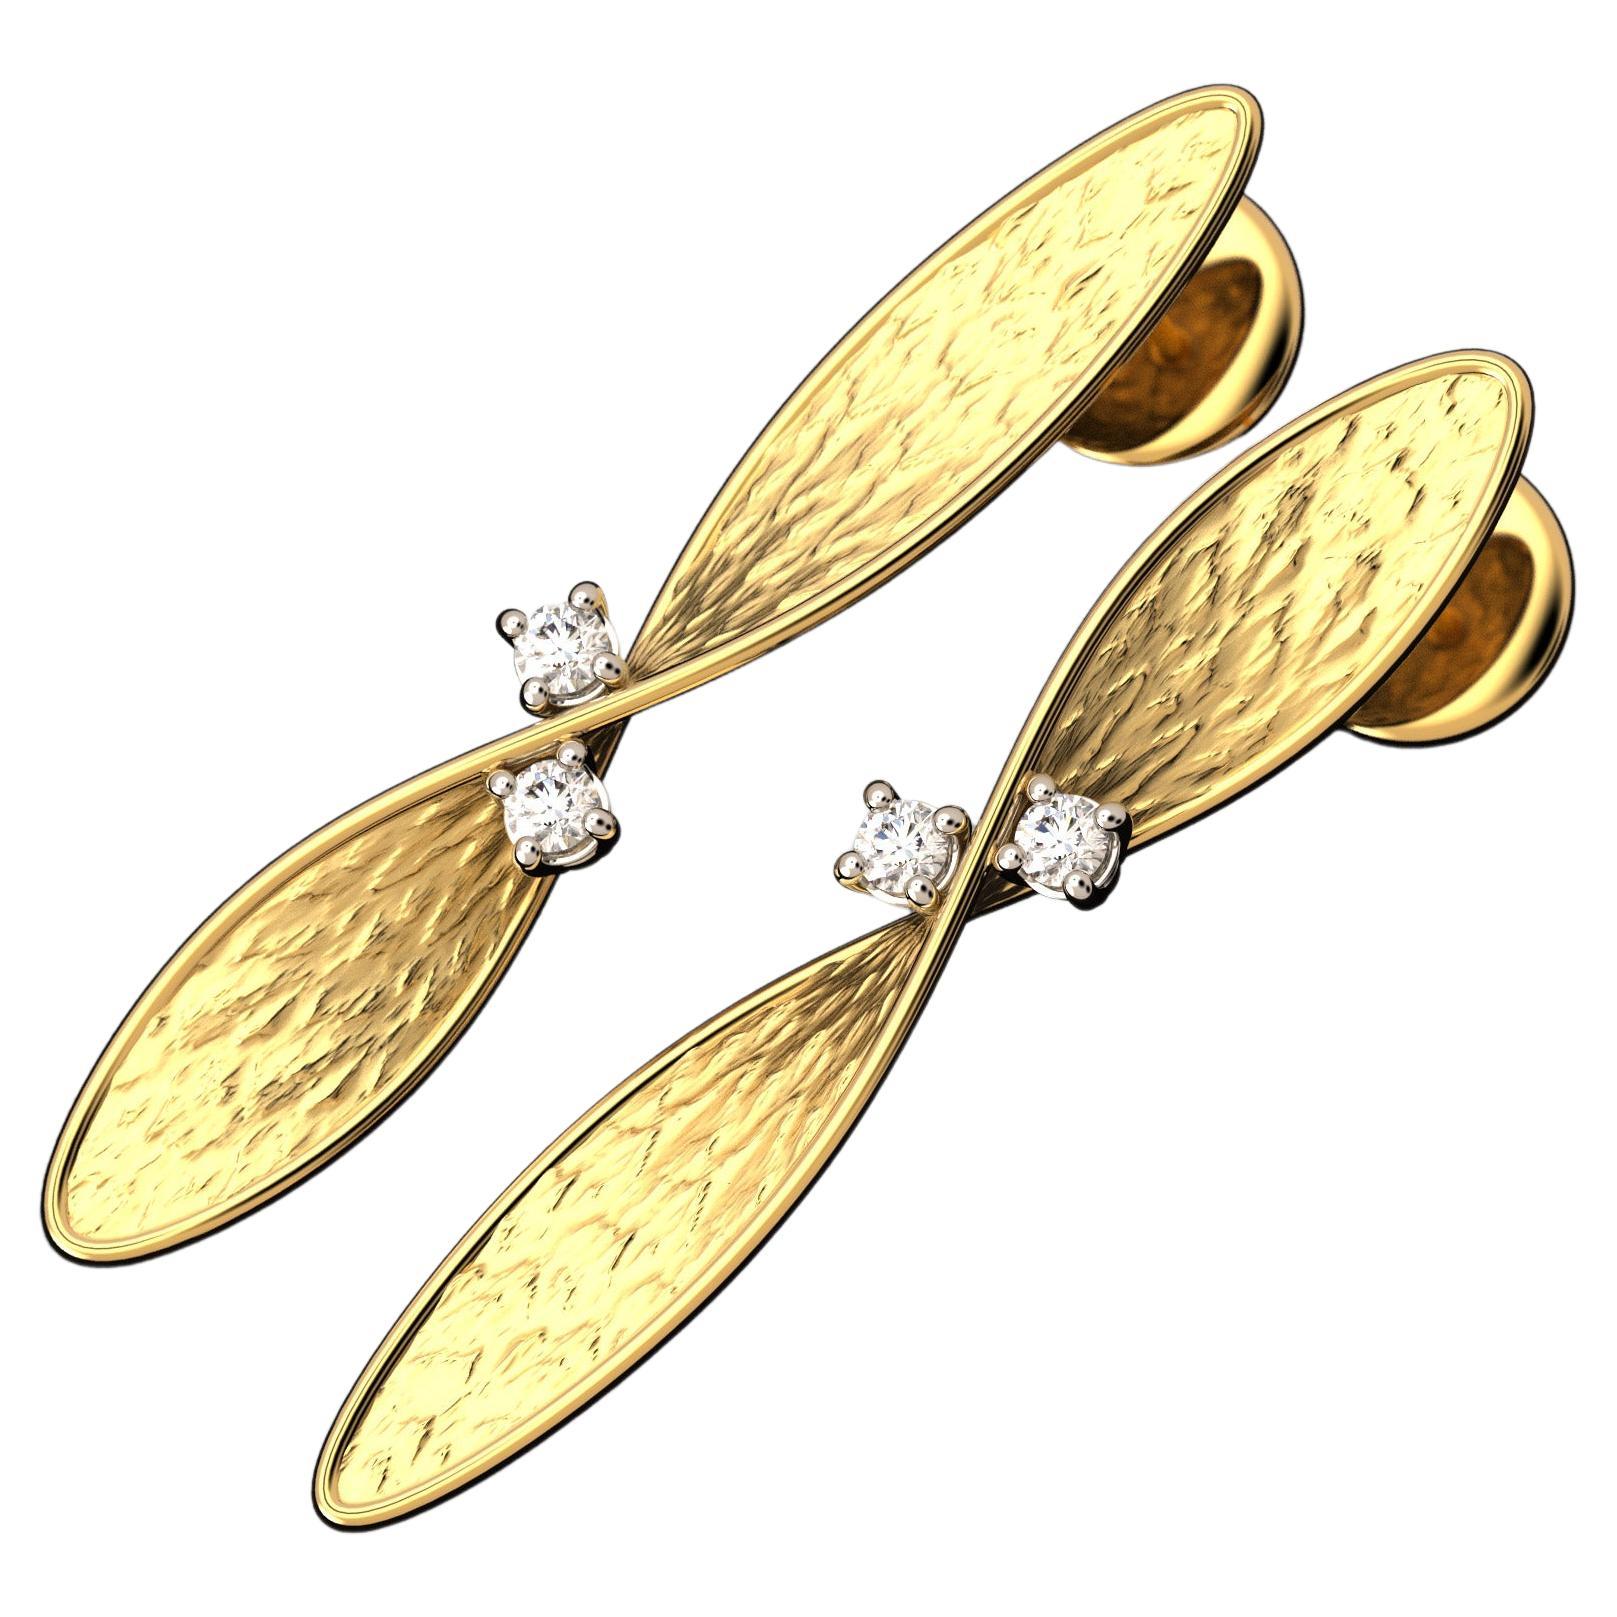 Oltremare Gioielli, bijoux italiens, boucles d'oreilles en or 14 carats et diamants, fabriquées en Italie